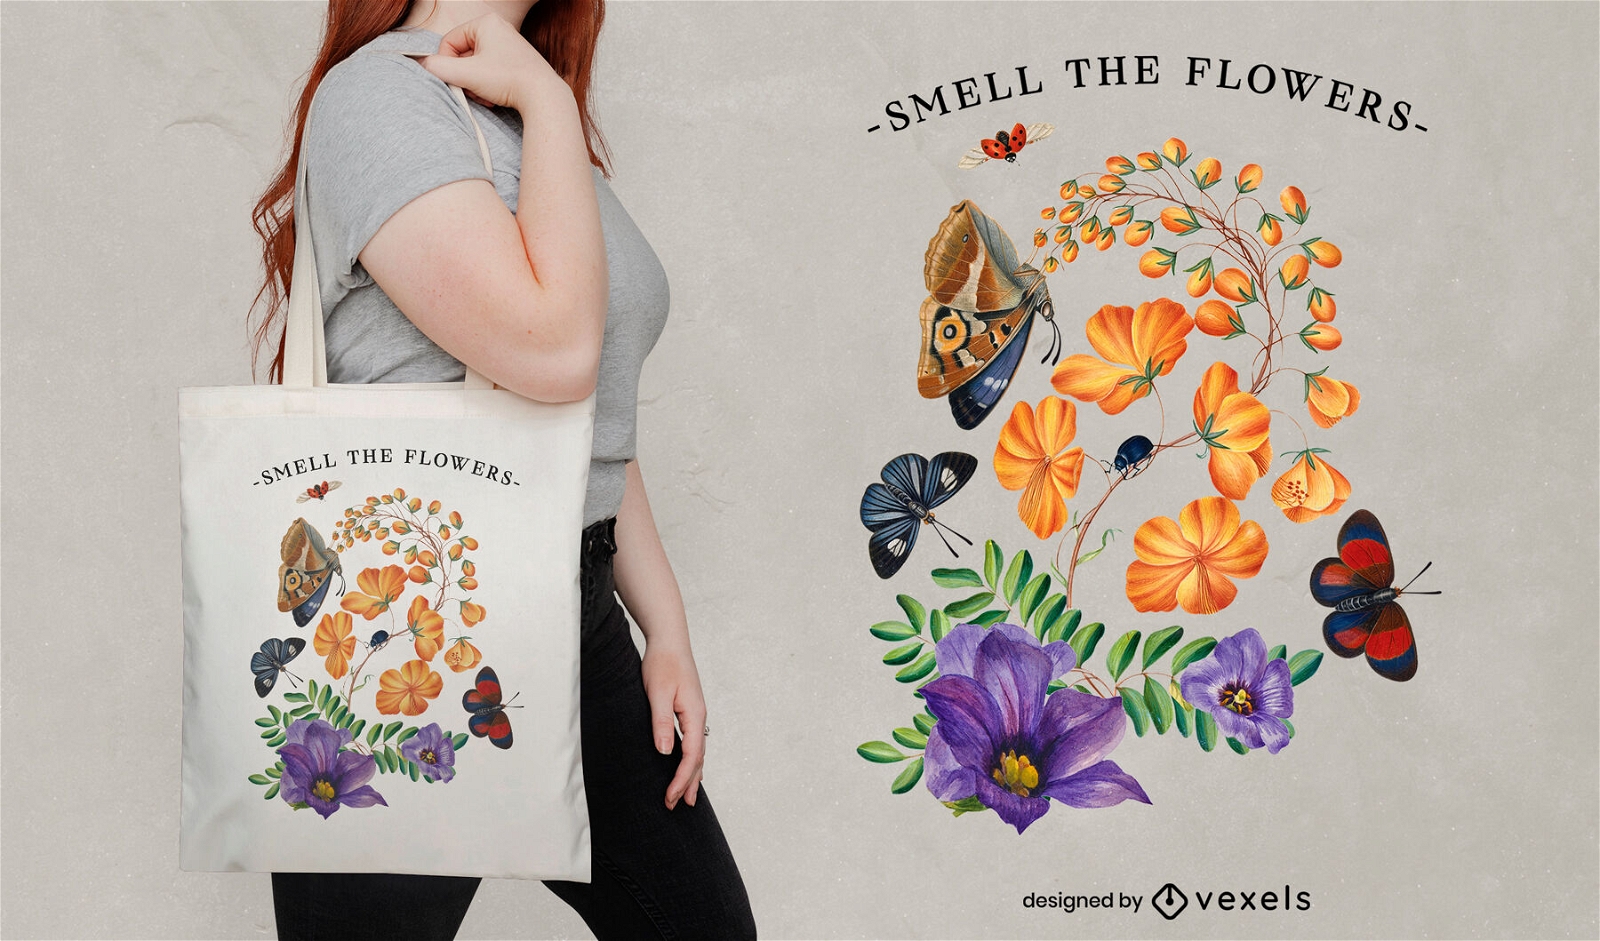 Riechen Sie das Blumen-Einkaufstaschendesign